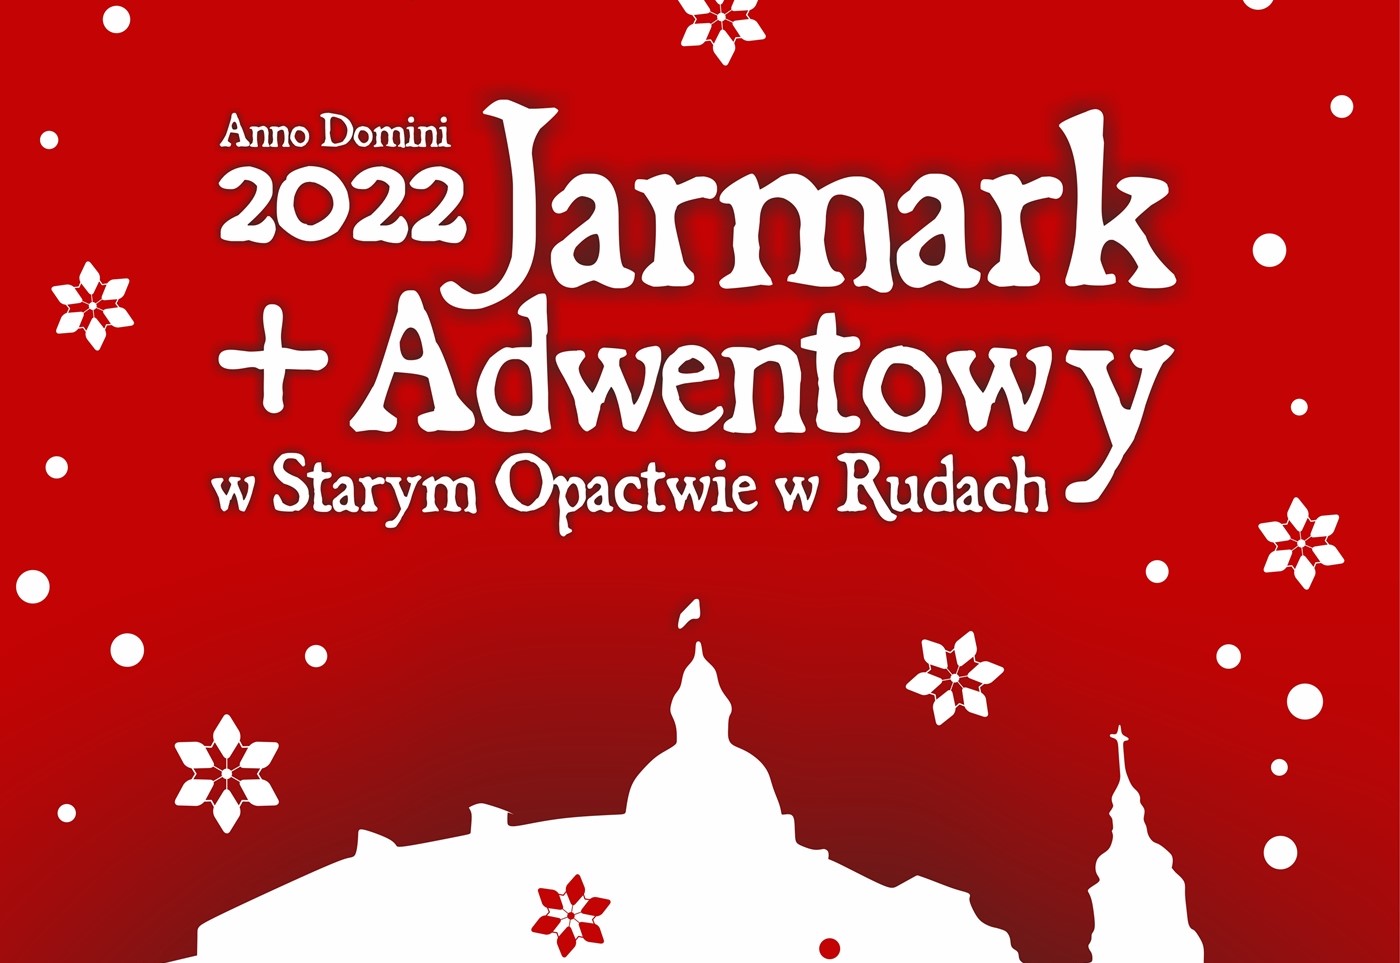 Jarmark Adwentowy w Starym Opactwie w Rudach | 2022 